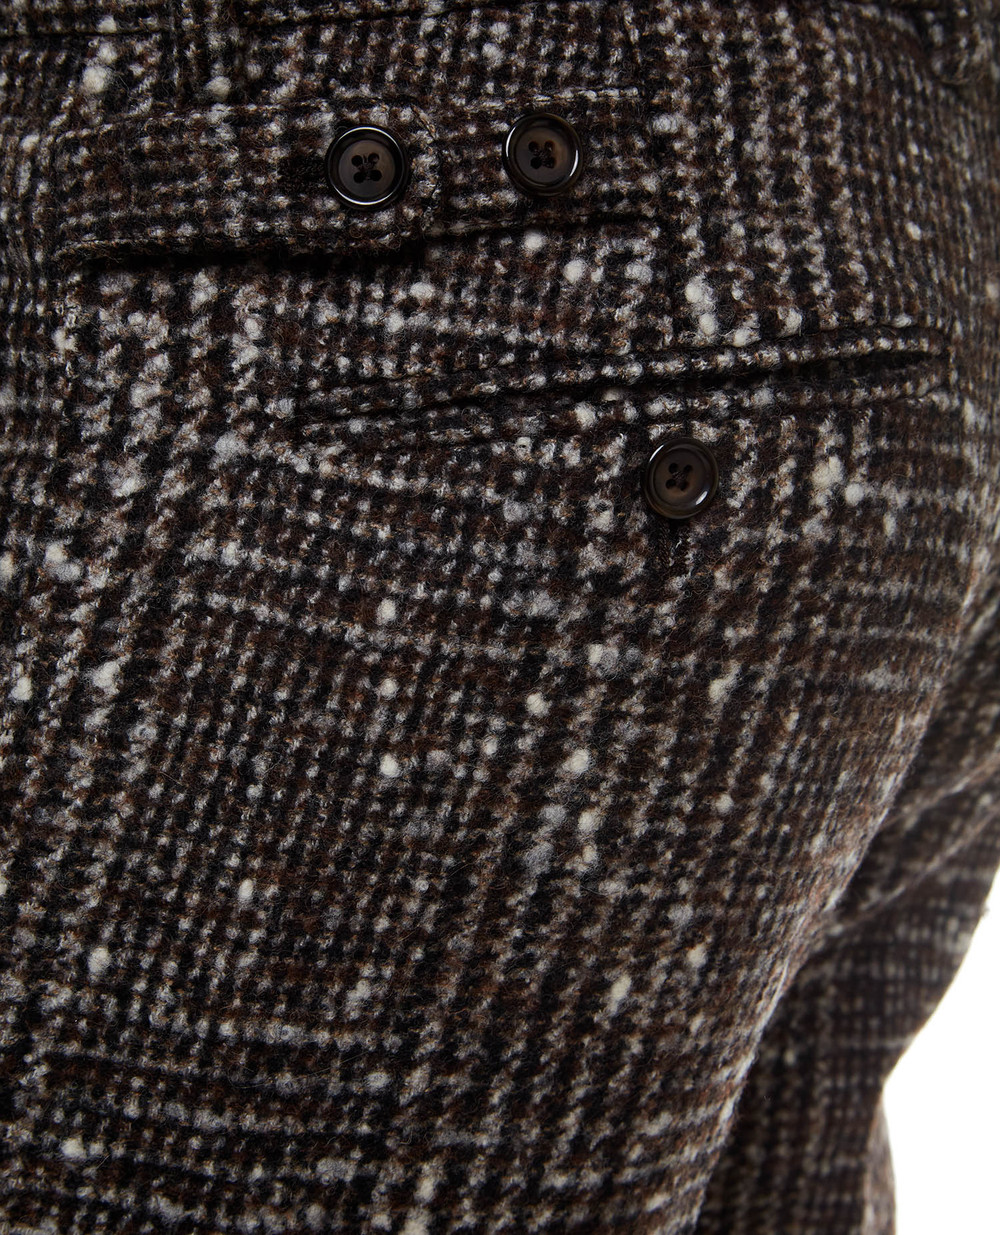 Шерстяные брюки Dolce&Gabbana GY6IET-FQMH6, коричневый цвет • Купить в интернет-магазине Kameron